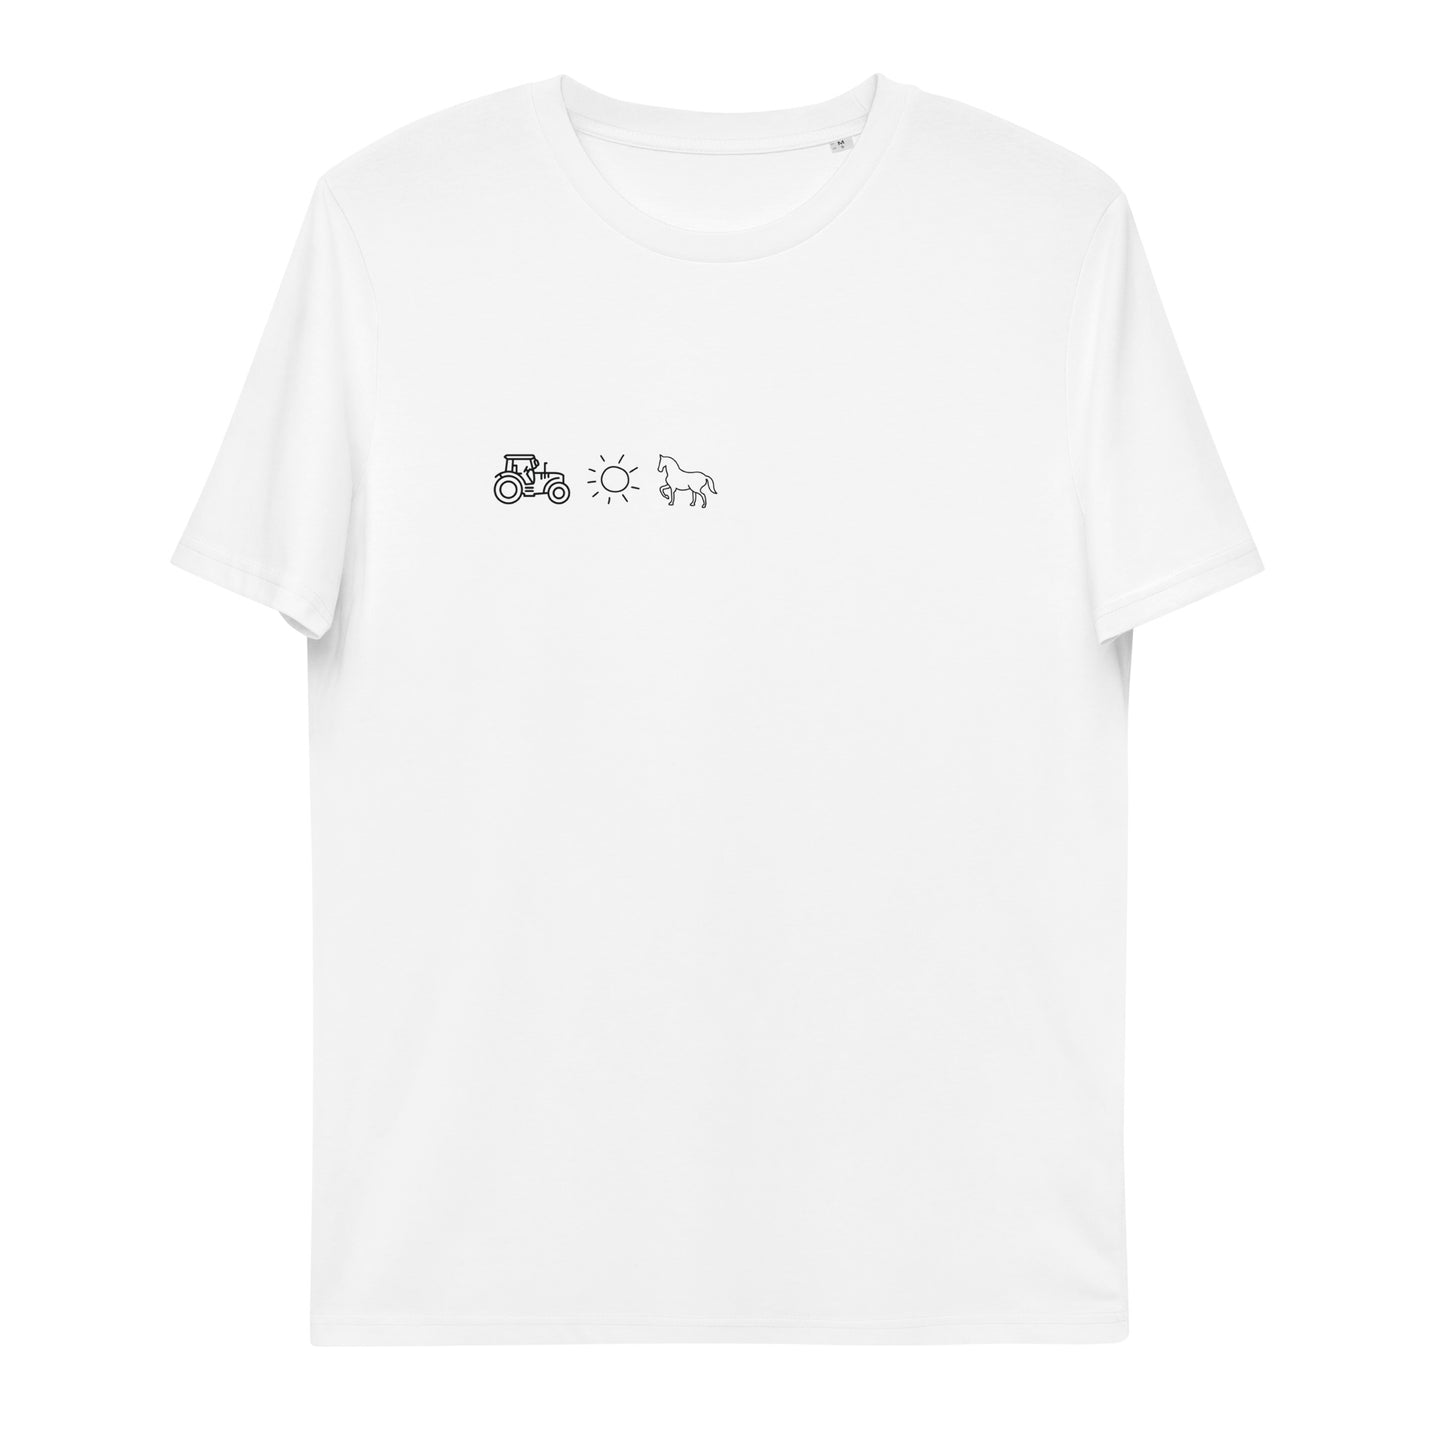 Elemente Pferd - Unisex T-Shirt